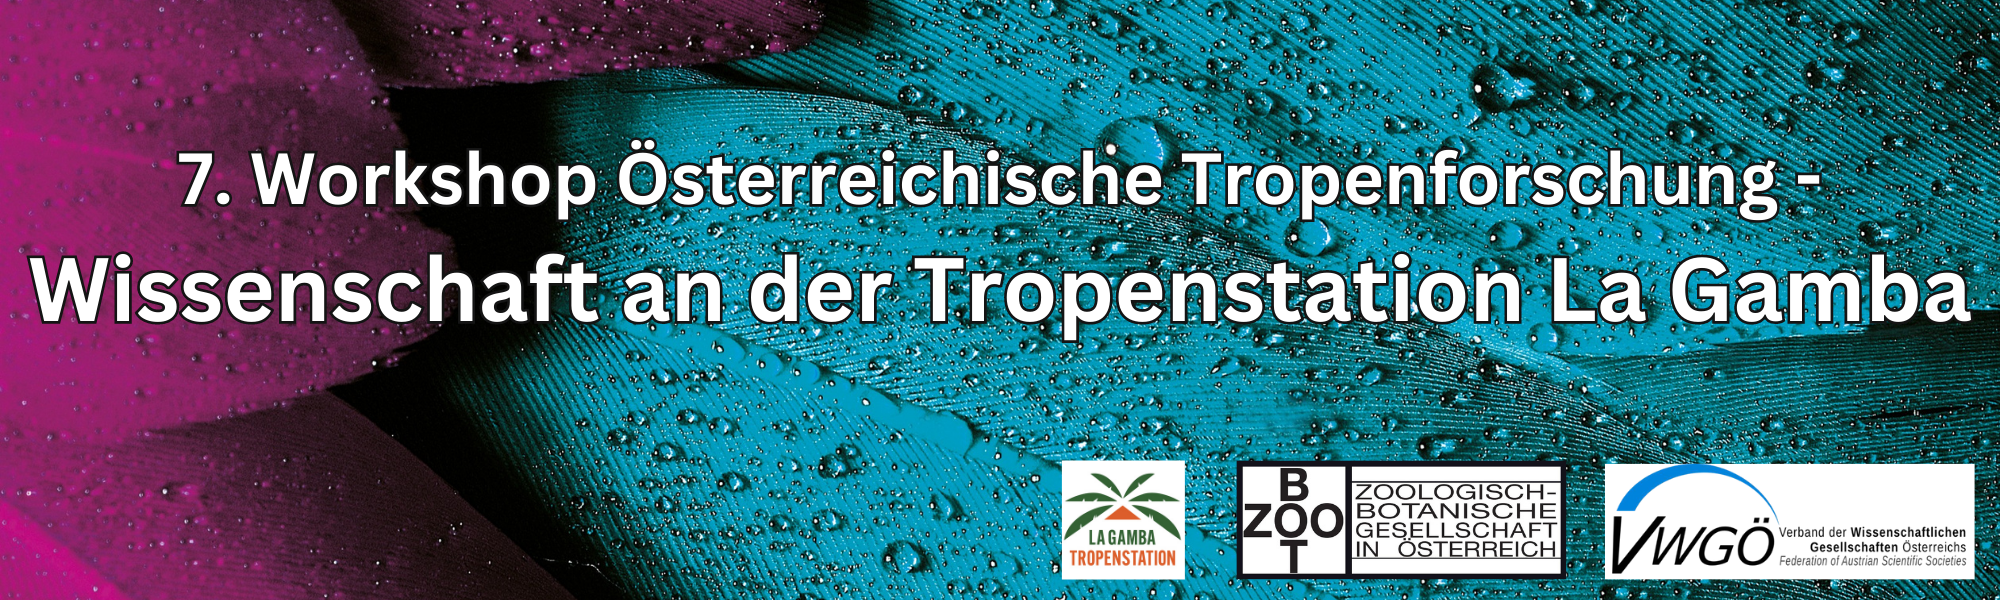 Wissenschaft an der Tropenstation La Gamba – 7. Workshop Österreichische Tropenforschung